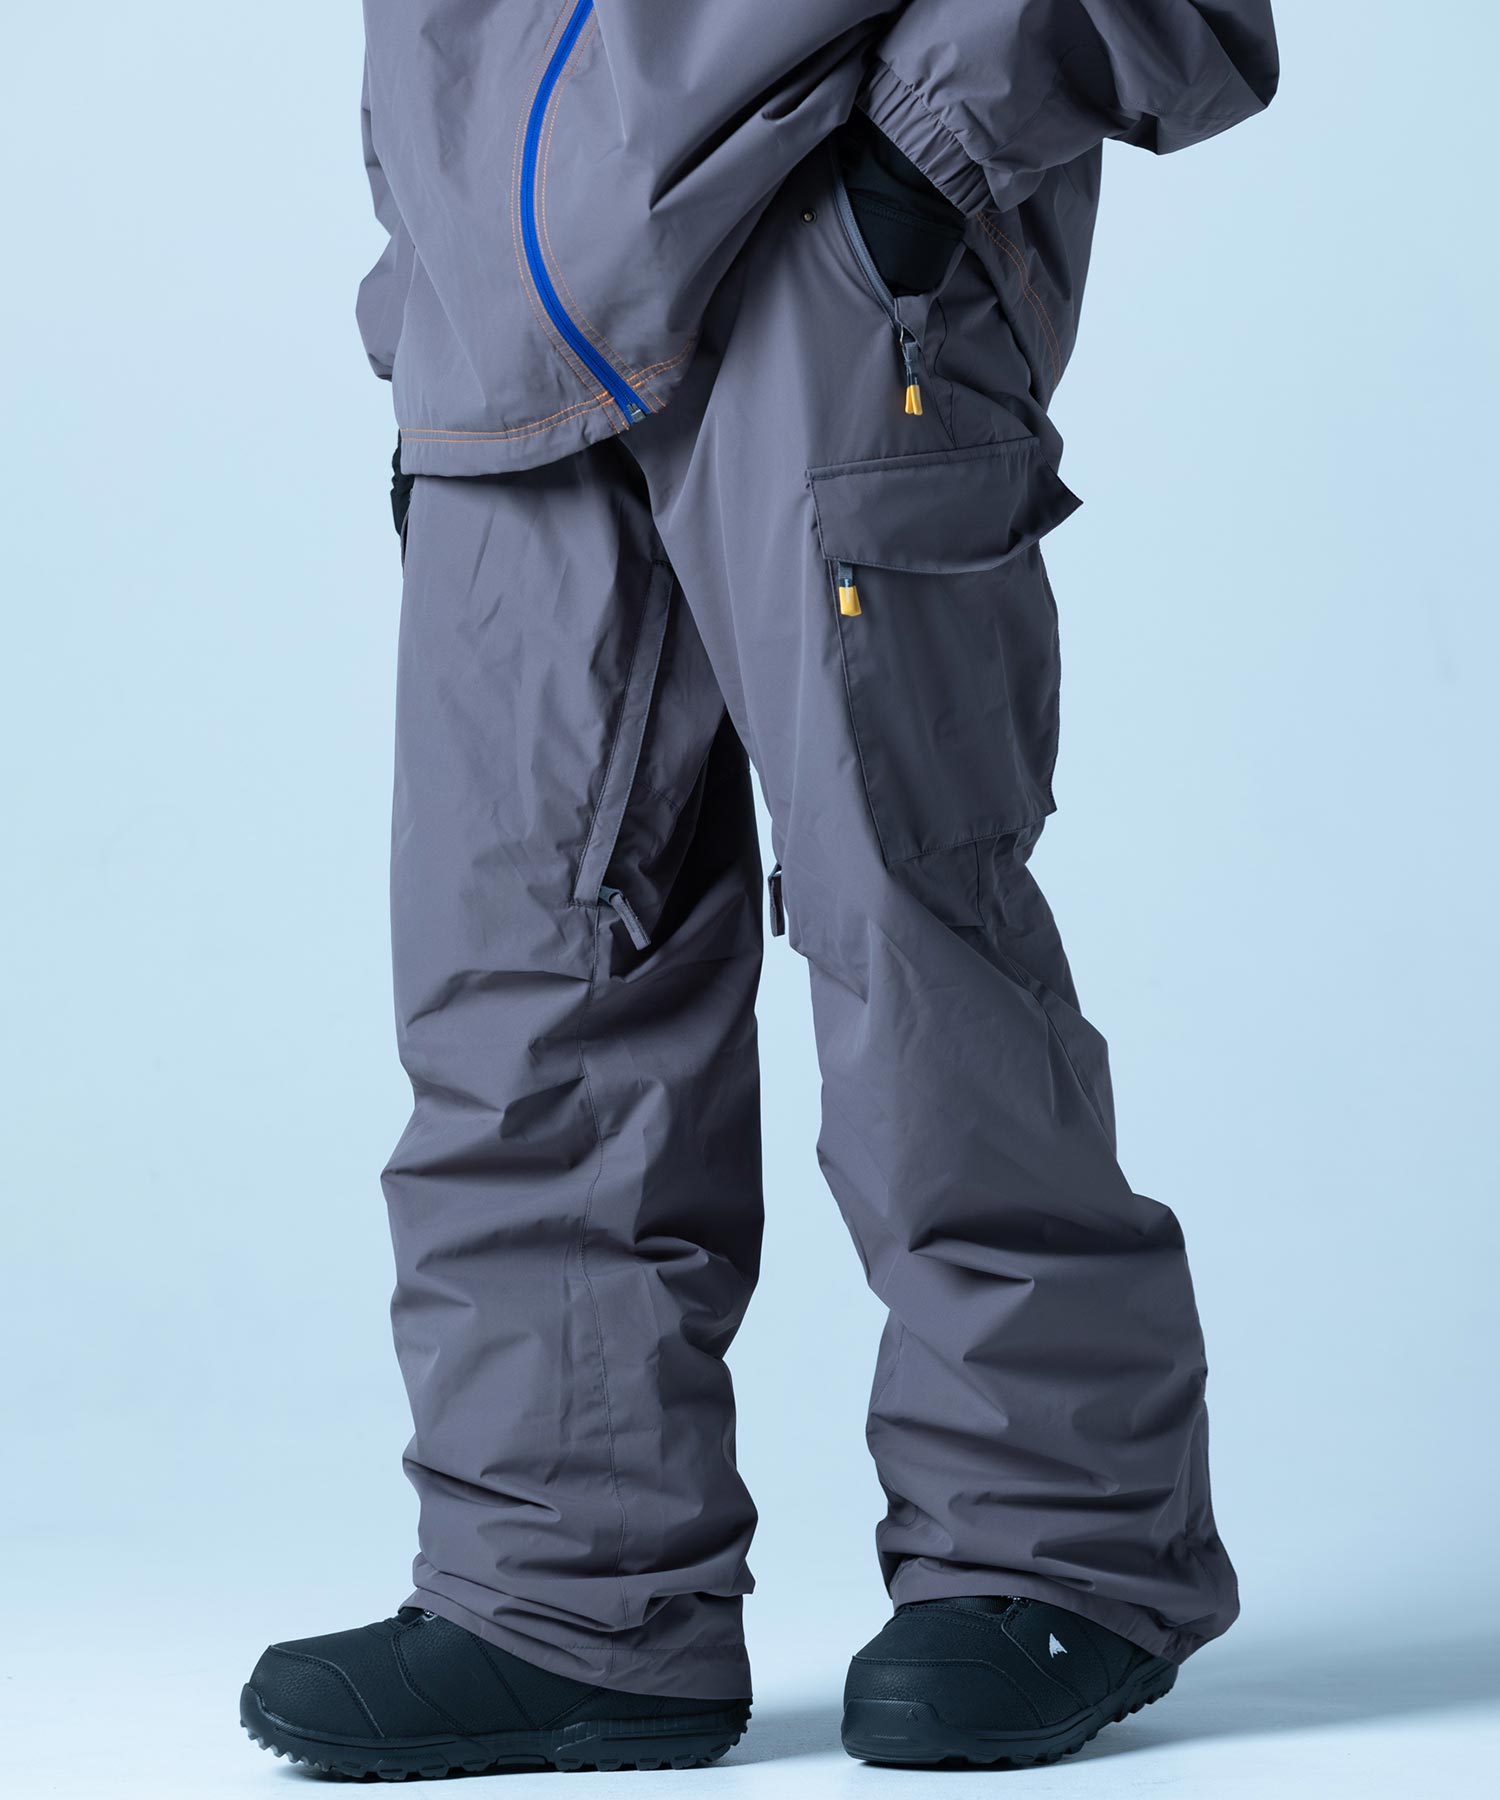 【MENS】ミリタリーパンツ SWEDISH ARMY PANTS スノーボード・スキーウェア タウンウェア